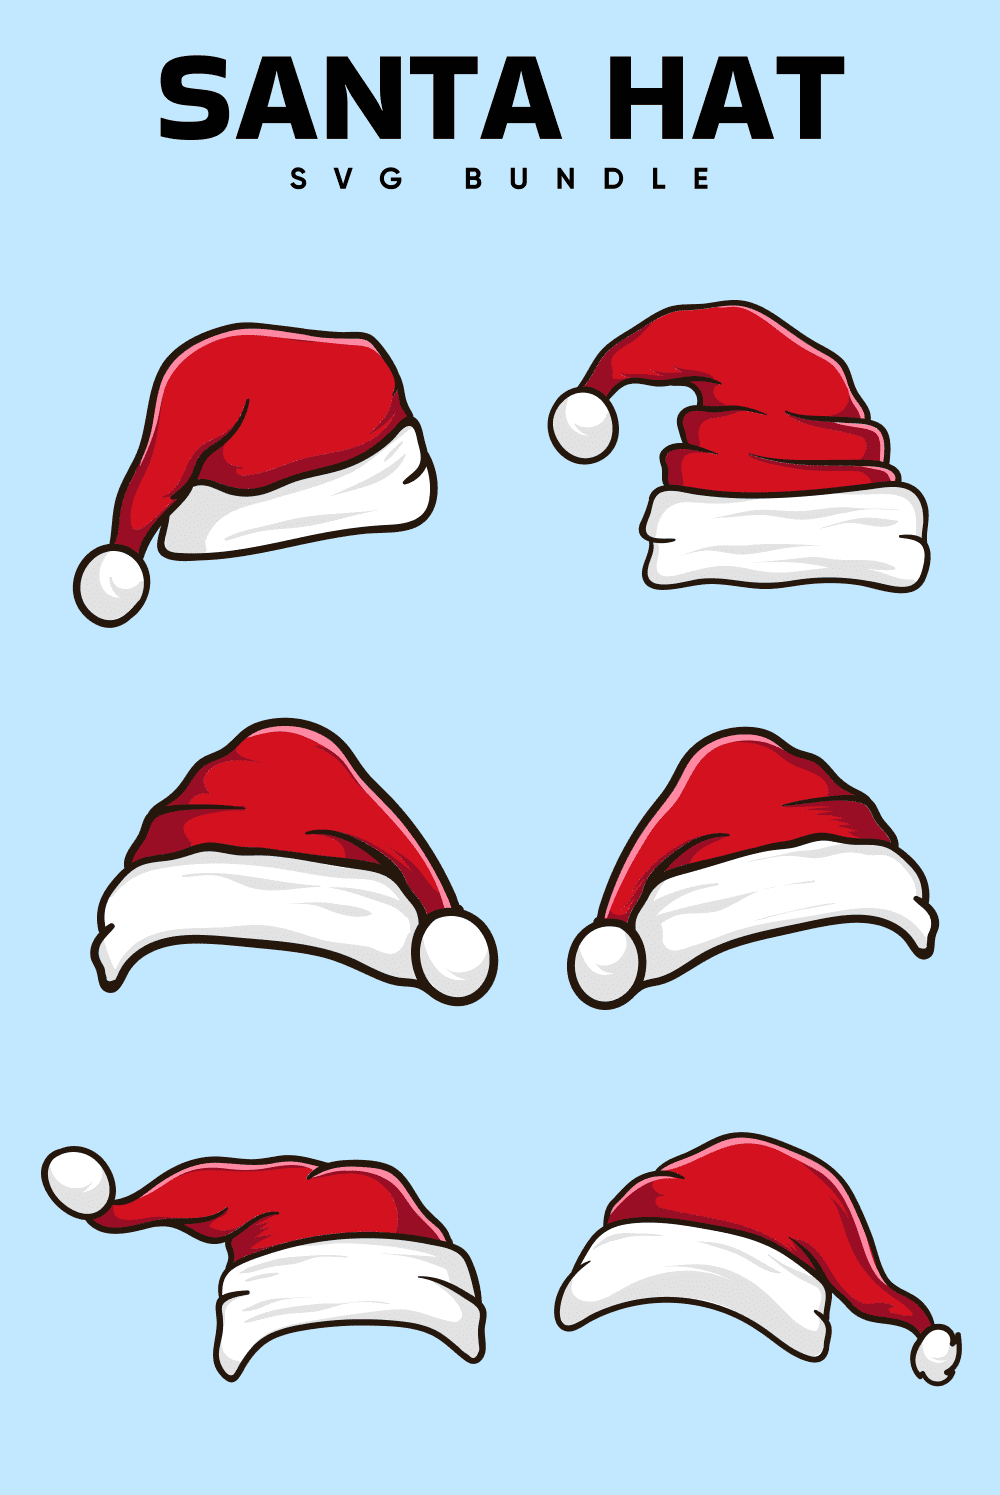 Santa hat SVG bundle.